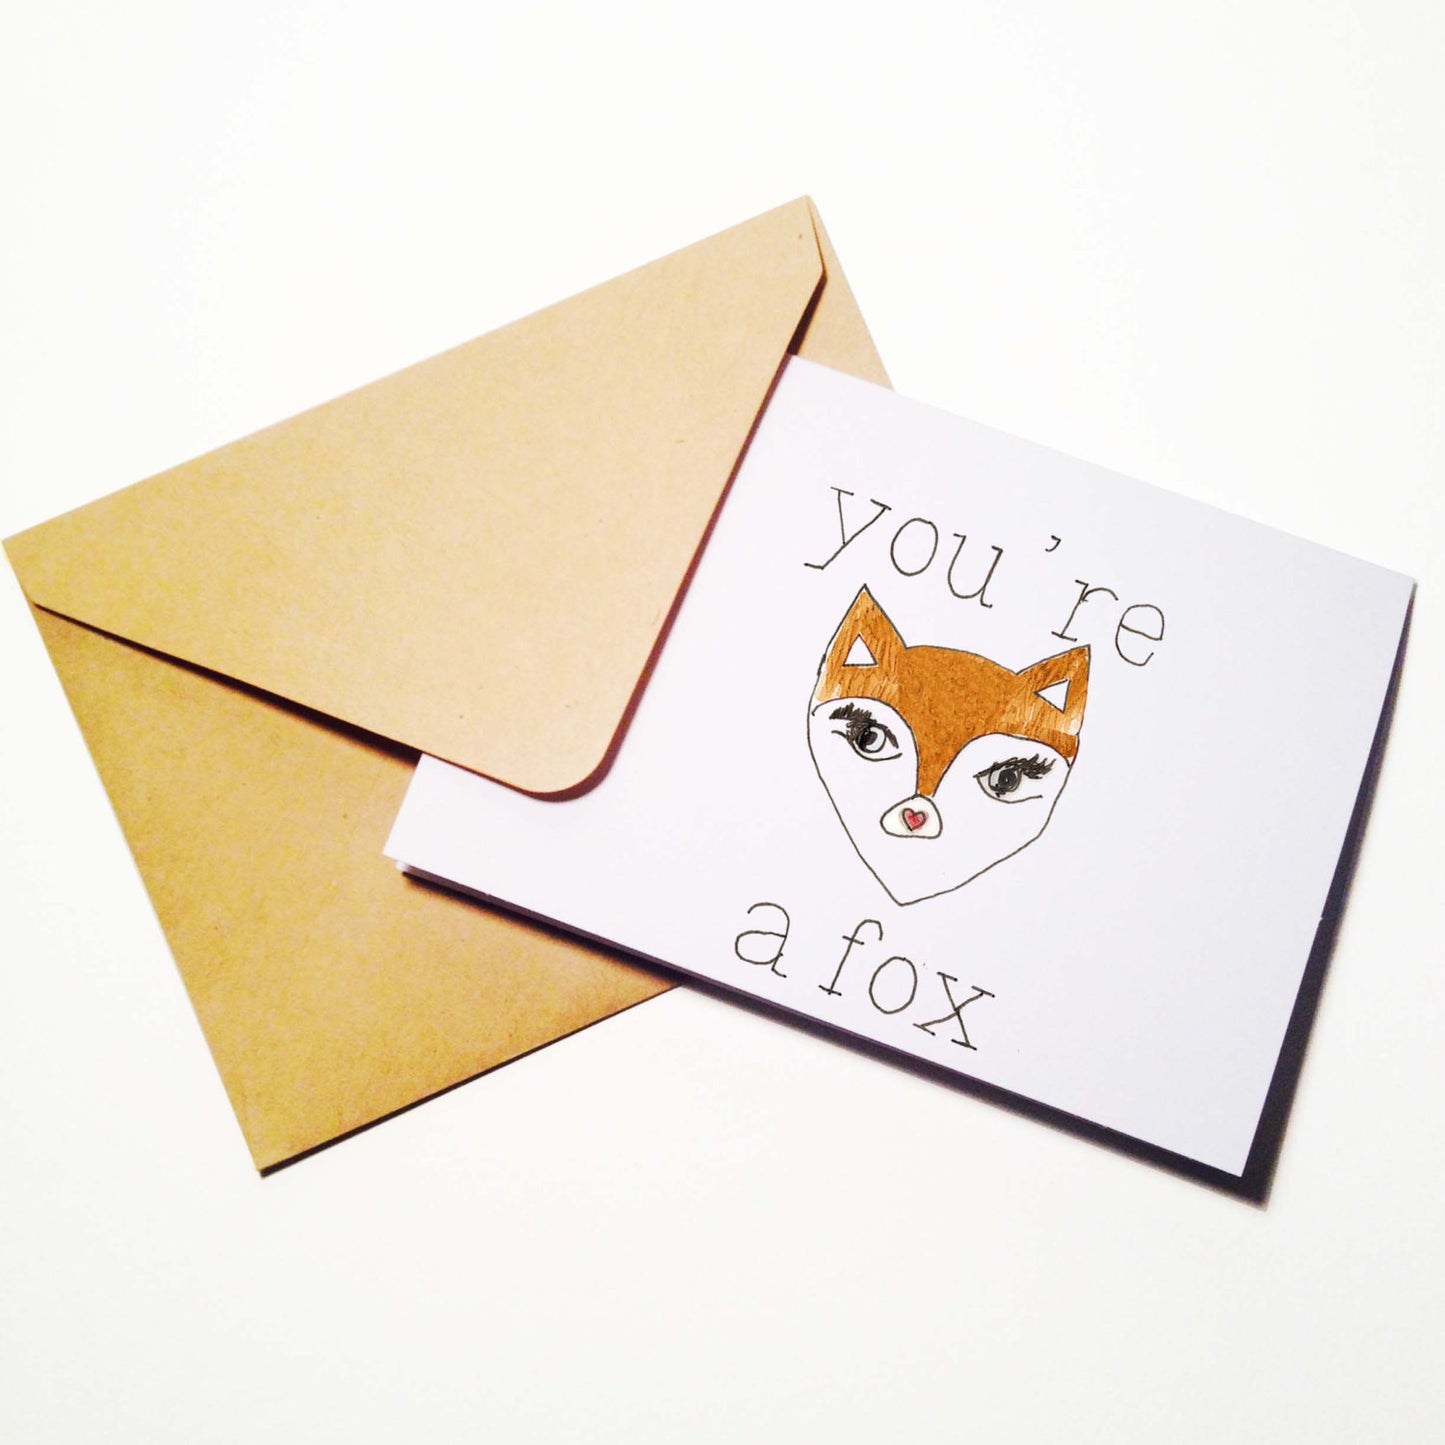 Youre A Fox Card